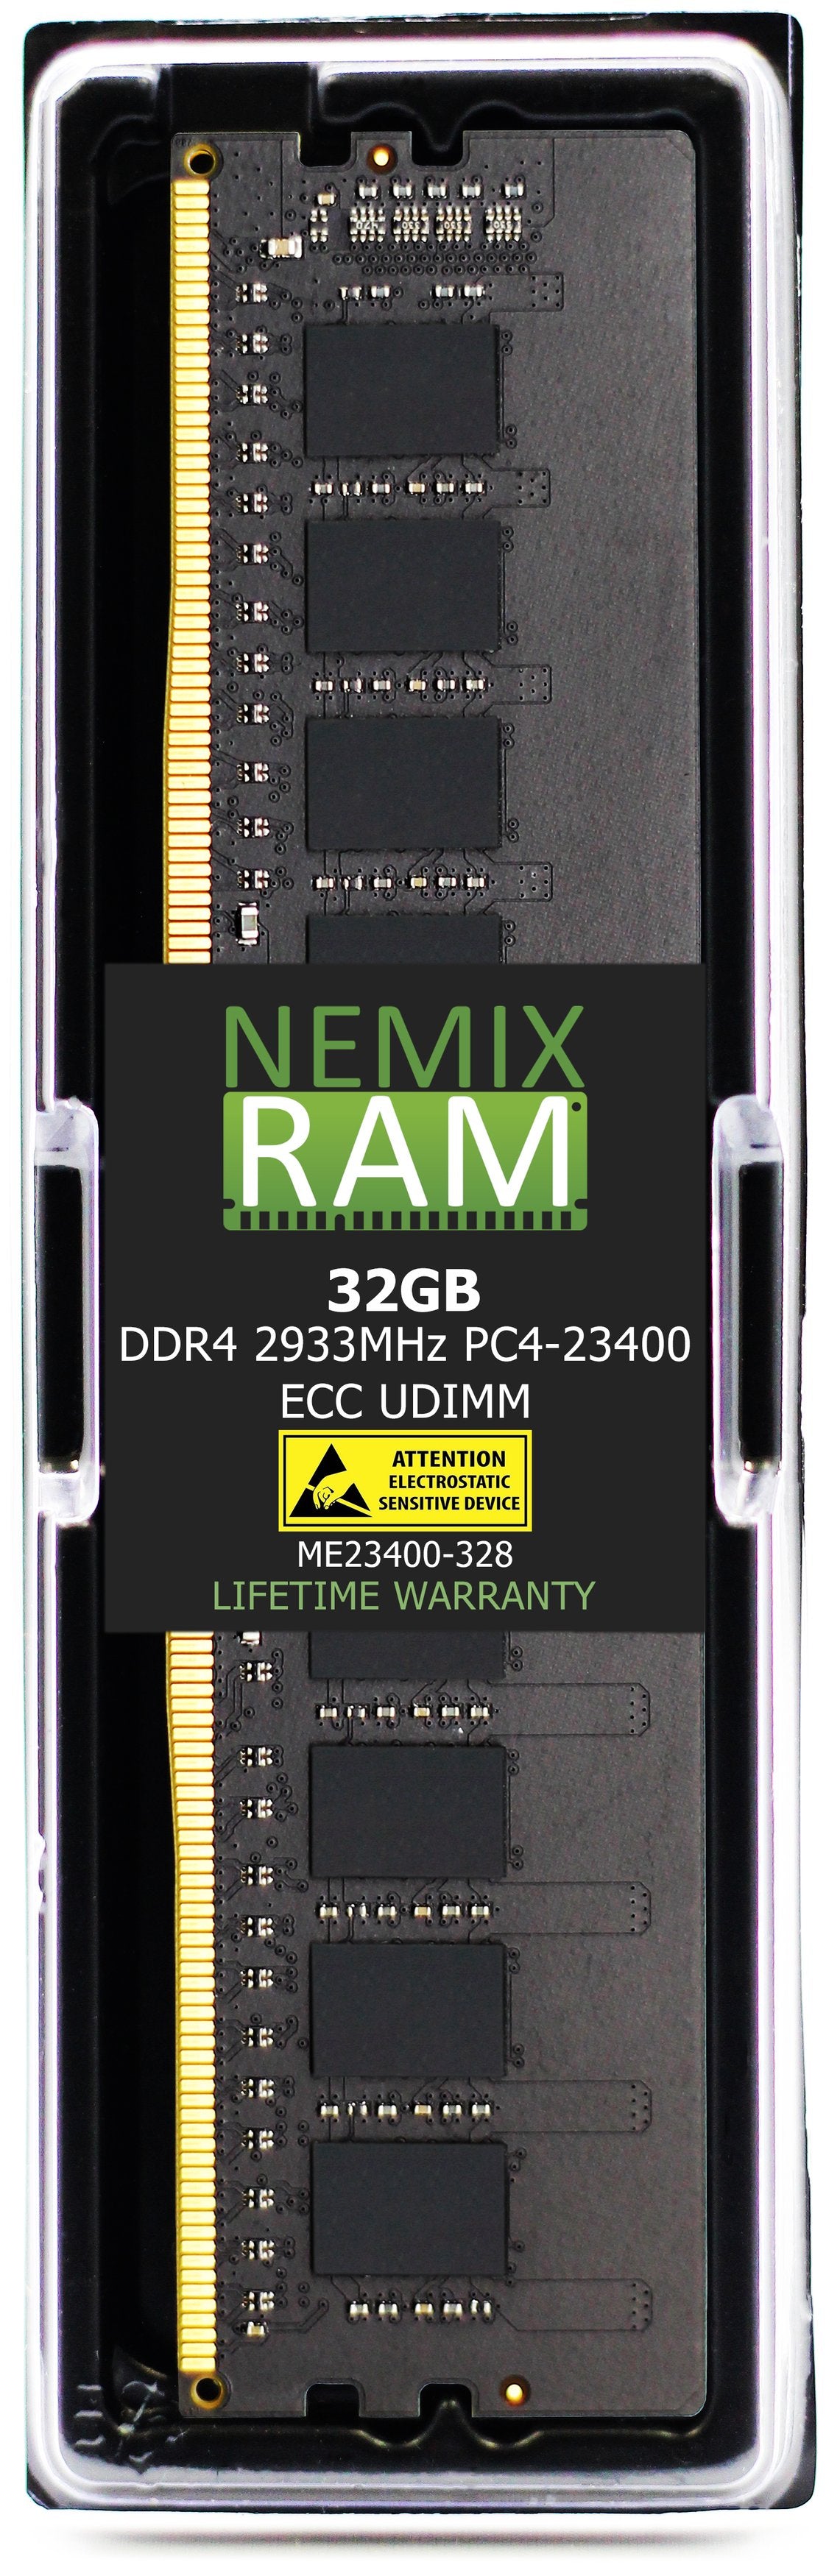 32GB DDR4 2933MHZ PC4-23400 ECC UDIMM Compatible with Supermicro MEM-DR432L-HL01-EU29